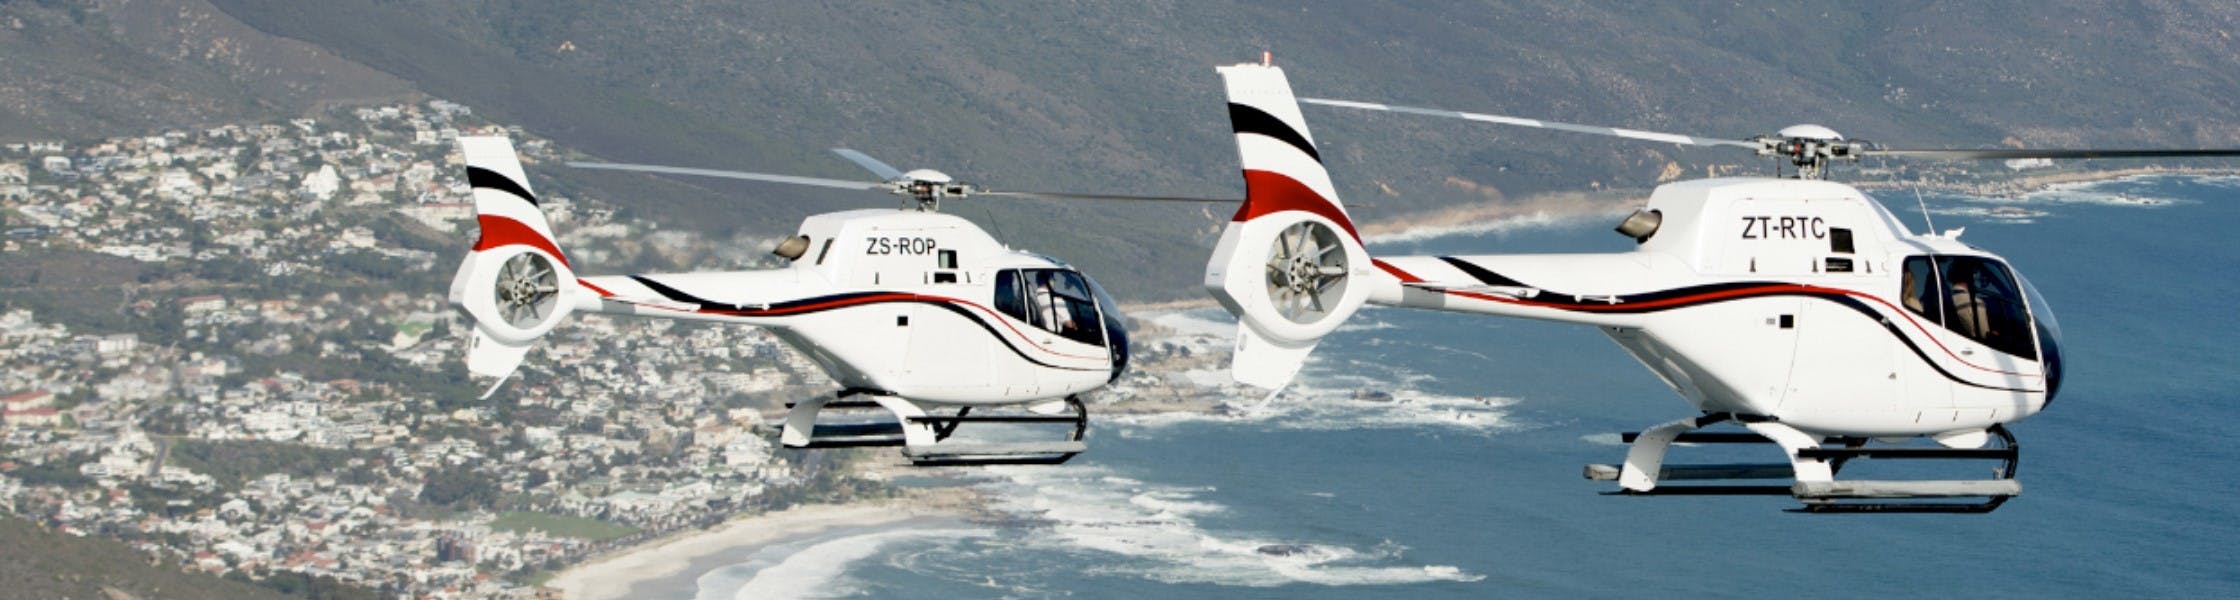 Cape Town Twelve Apostles 16 minutos de voo panorâmico de helicóptero